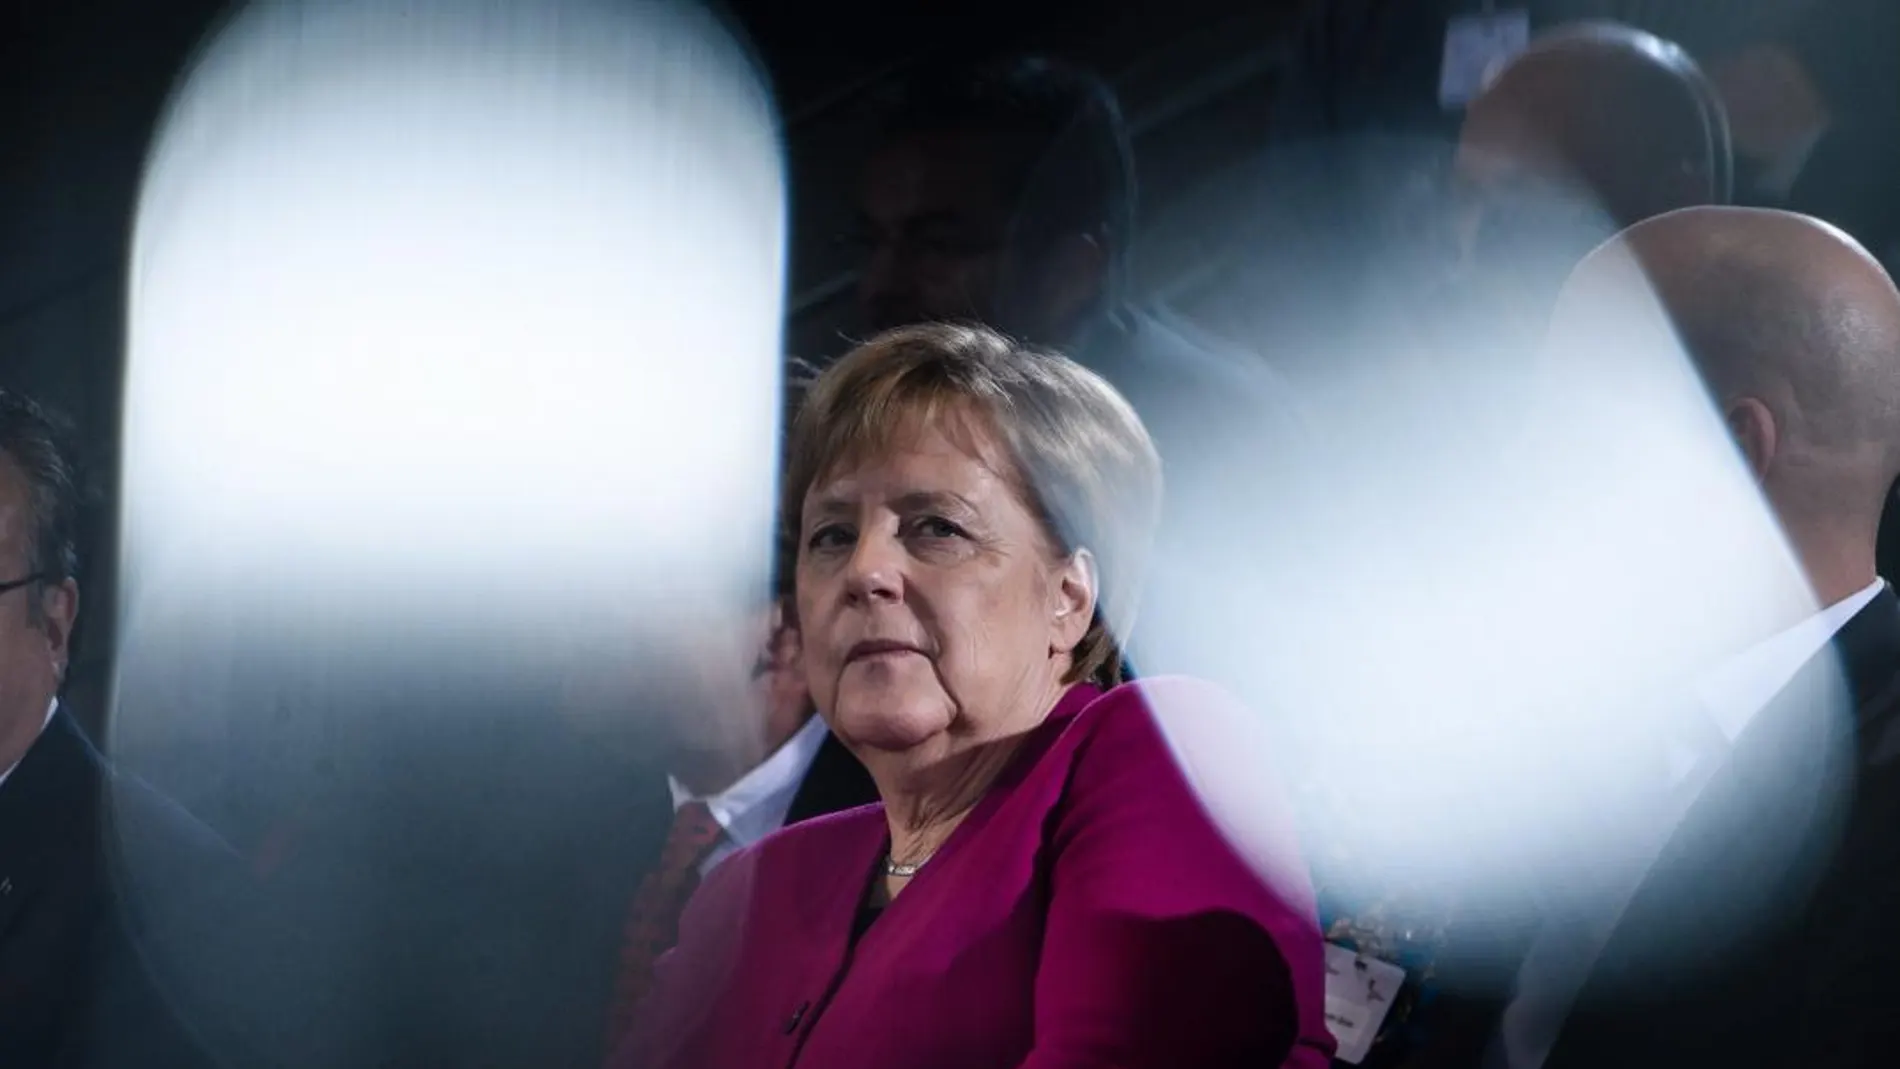 La canciller alemana dejará la política tras concluir su actual mandato en 2021